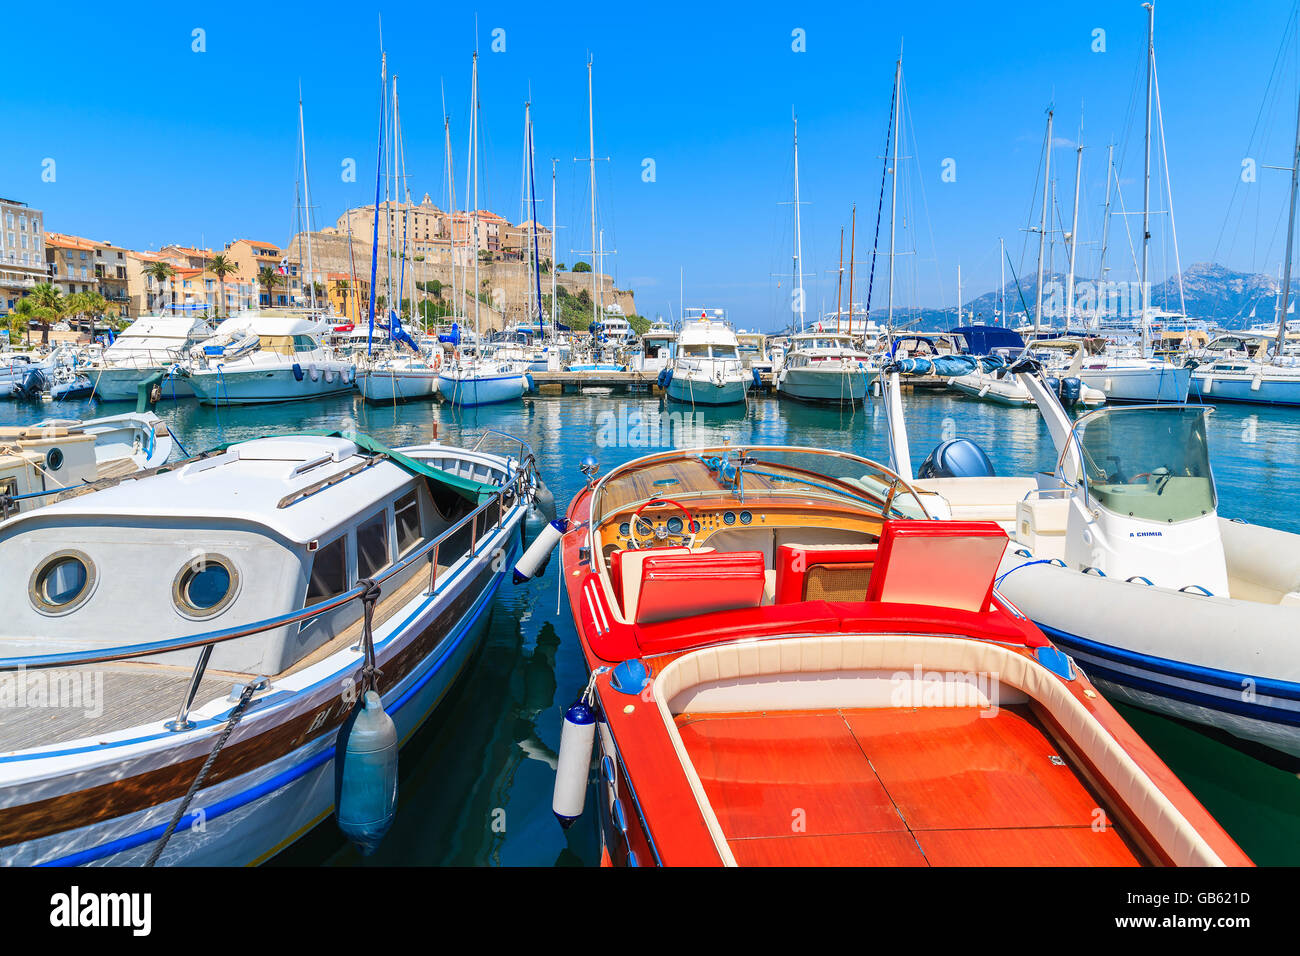 Il porto di Calvi, Isola di Corsica - giu 28, 2015: stile retro motore posto barca in Calvi marina sulla costa occidentale della Corsica, Foto Stock